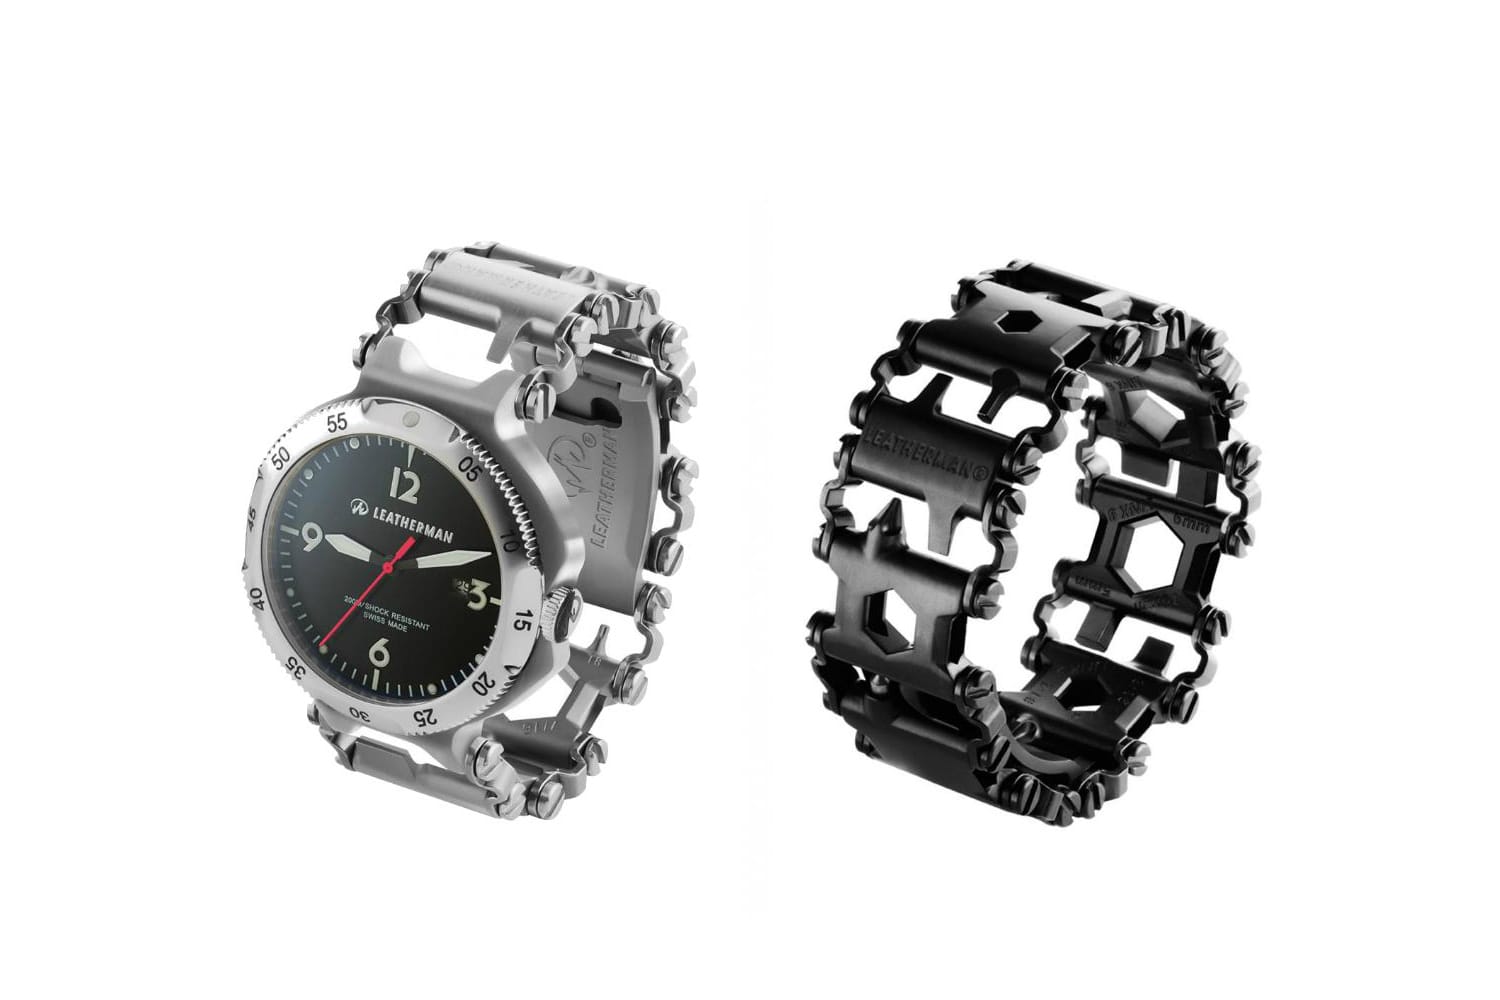 Ein schicker Helfer ist das neue 29-teilige Werkzeug-Armband Tread von Leatherman (Schwarz für 259 Euro). Eine stylishe Alternative bietet die bis 200 Meter wasserdichte Version mit Uhr (Silber für 399 Euro).